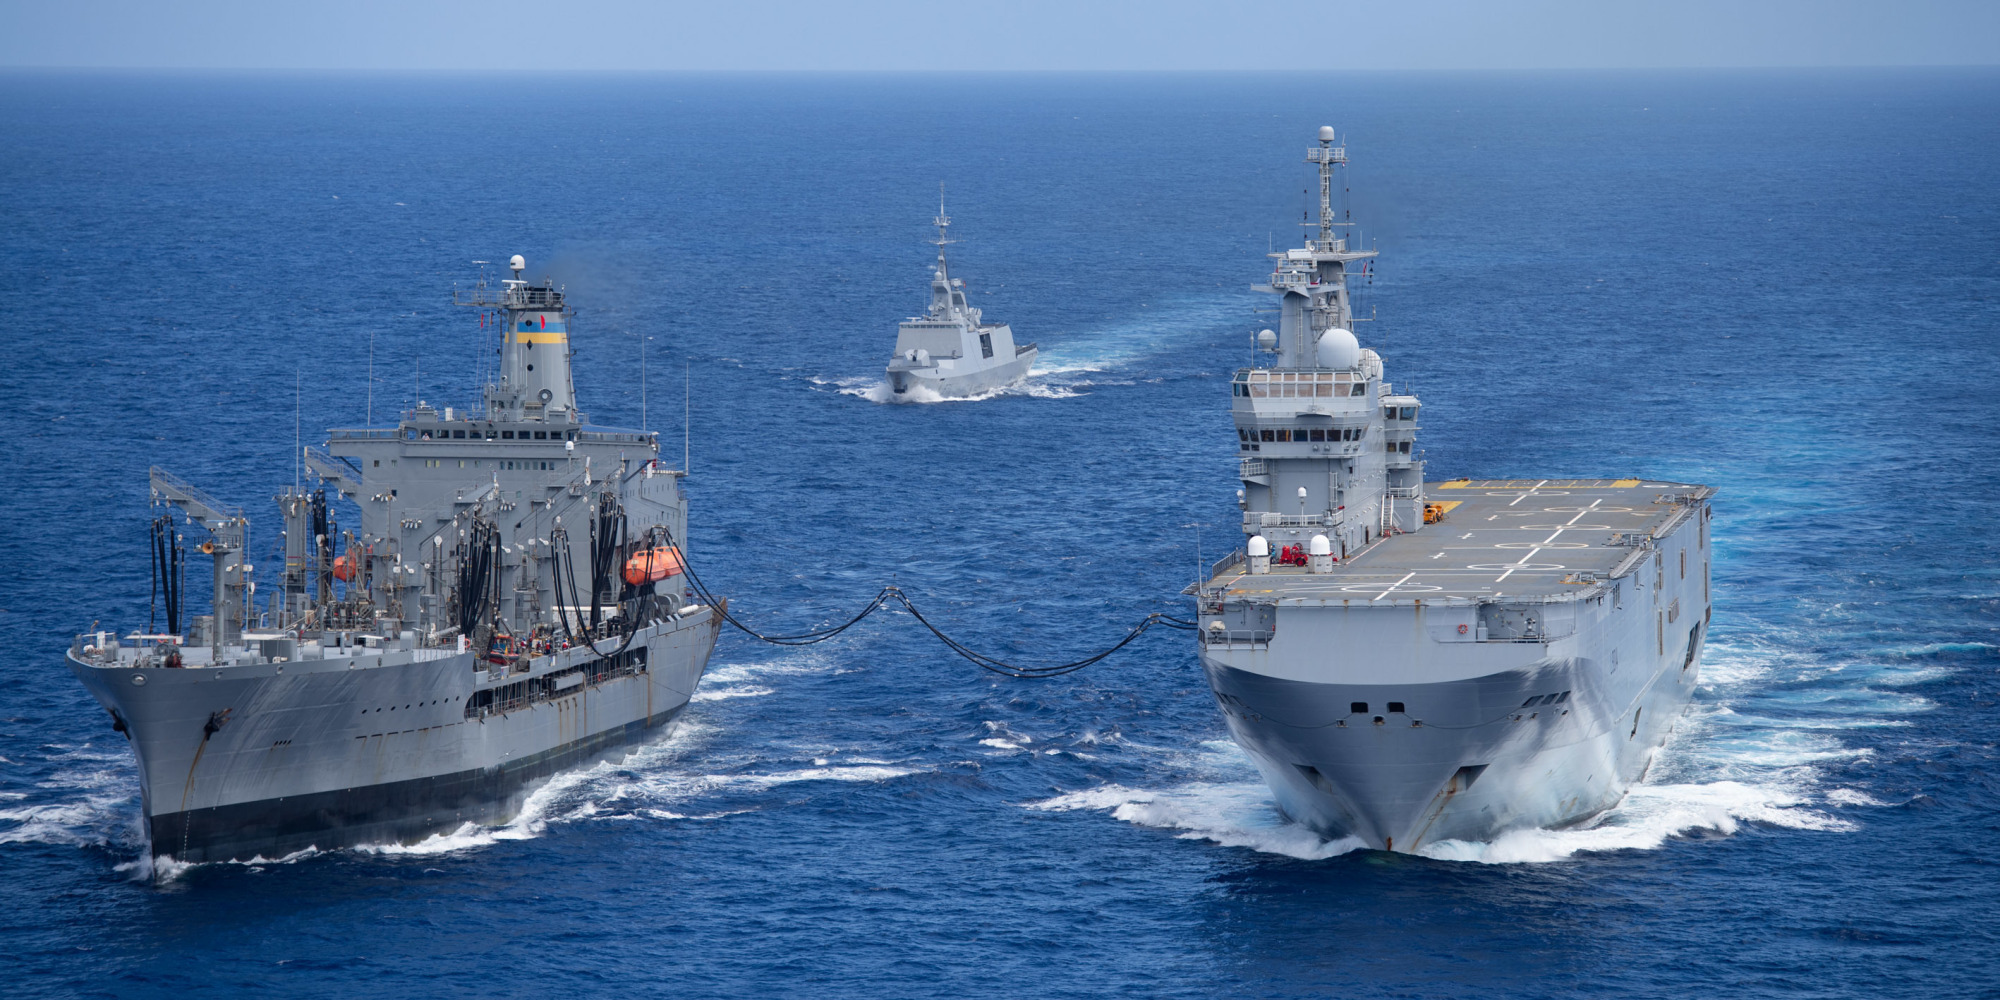 我们1年造舰超过整个法国海军法国海军武器和质量都占劣势